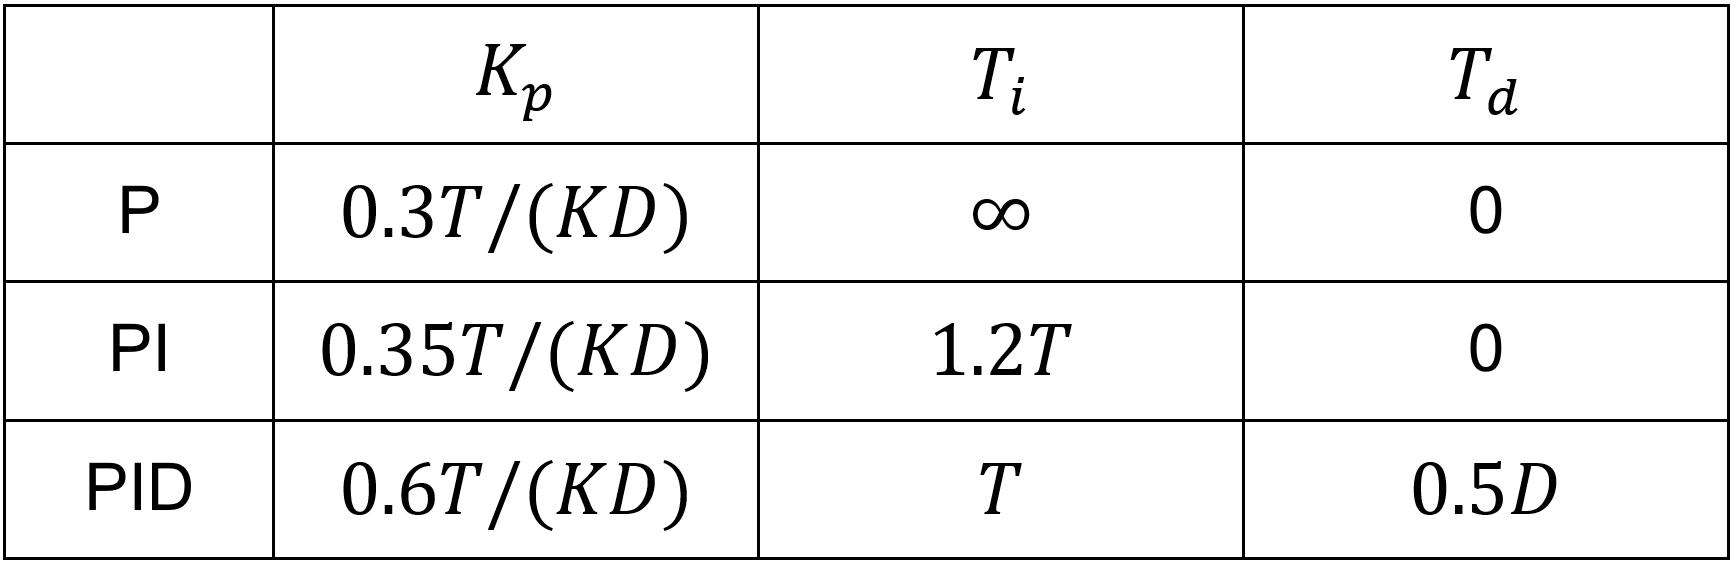 PID gain of Chien-Hrones-Reswick method